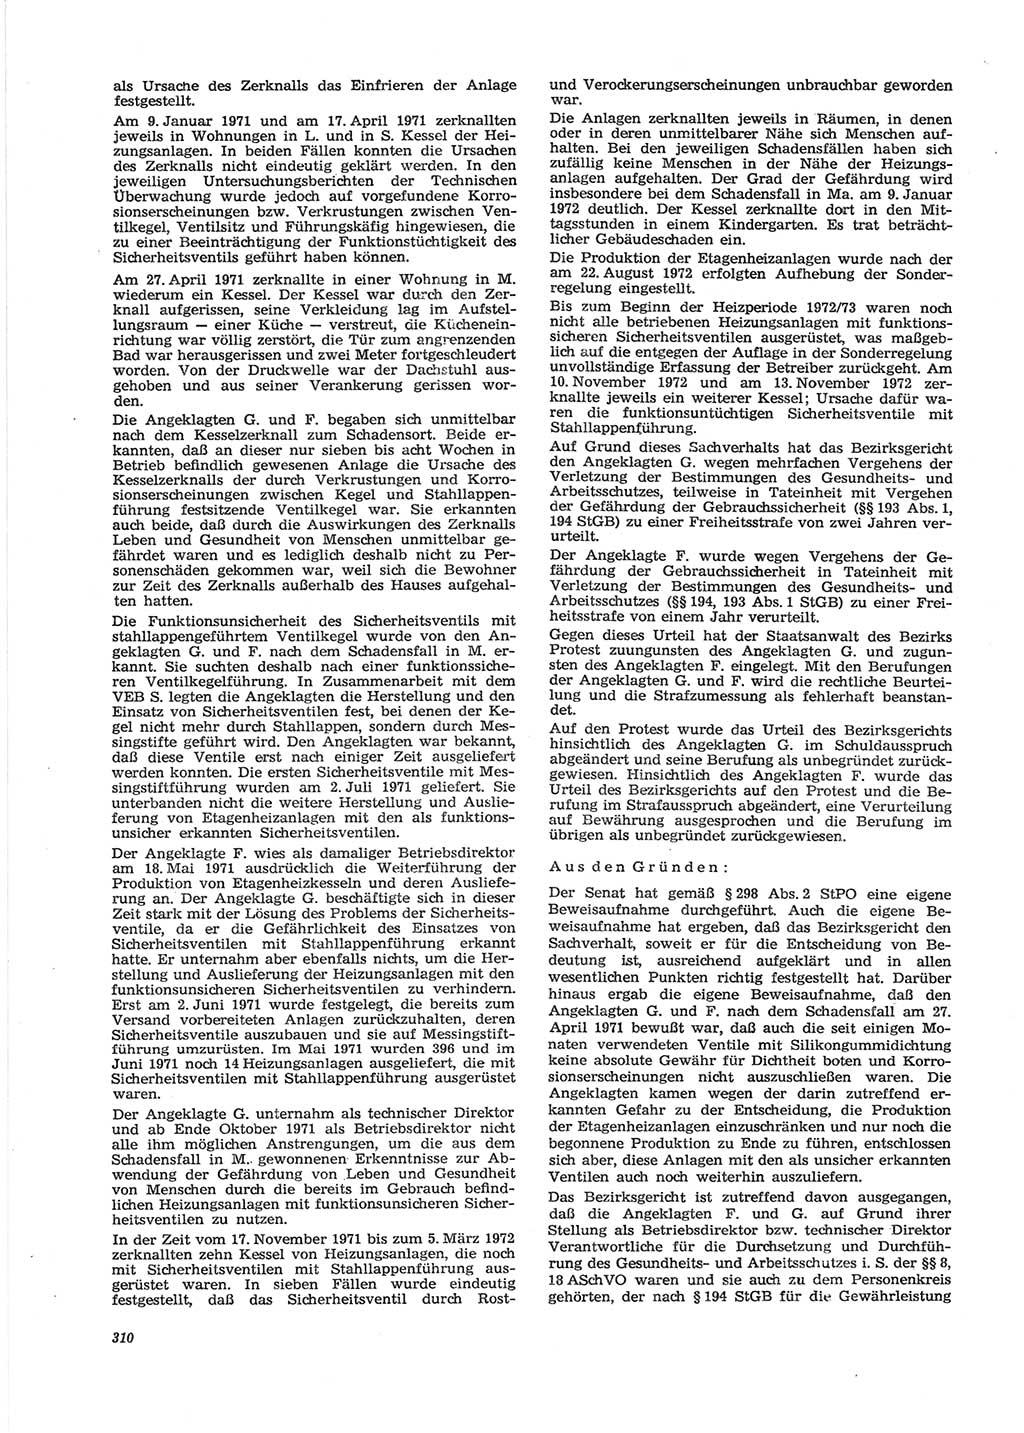 Neue Justiz (NJ), Zeitschrift für Recht und Rechtswissenschaft [Deutsche Demokratische Republik (DDR)], 28. Jahrgang 1974, Seite 310 (NJ DDR 1974, S. 310)